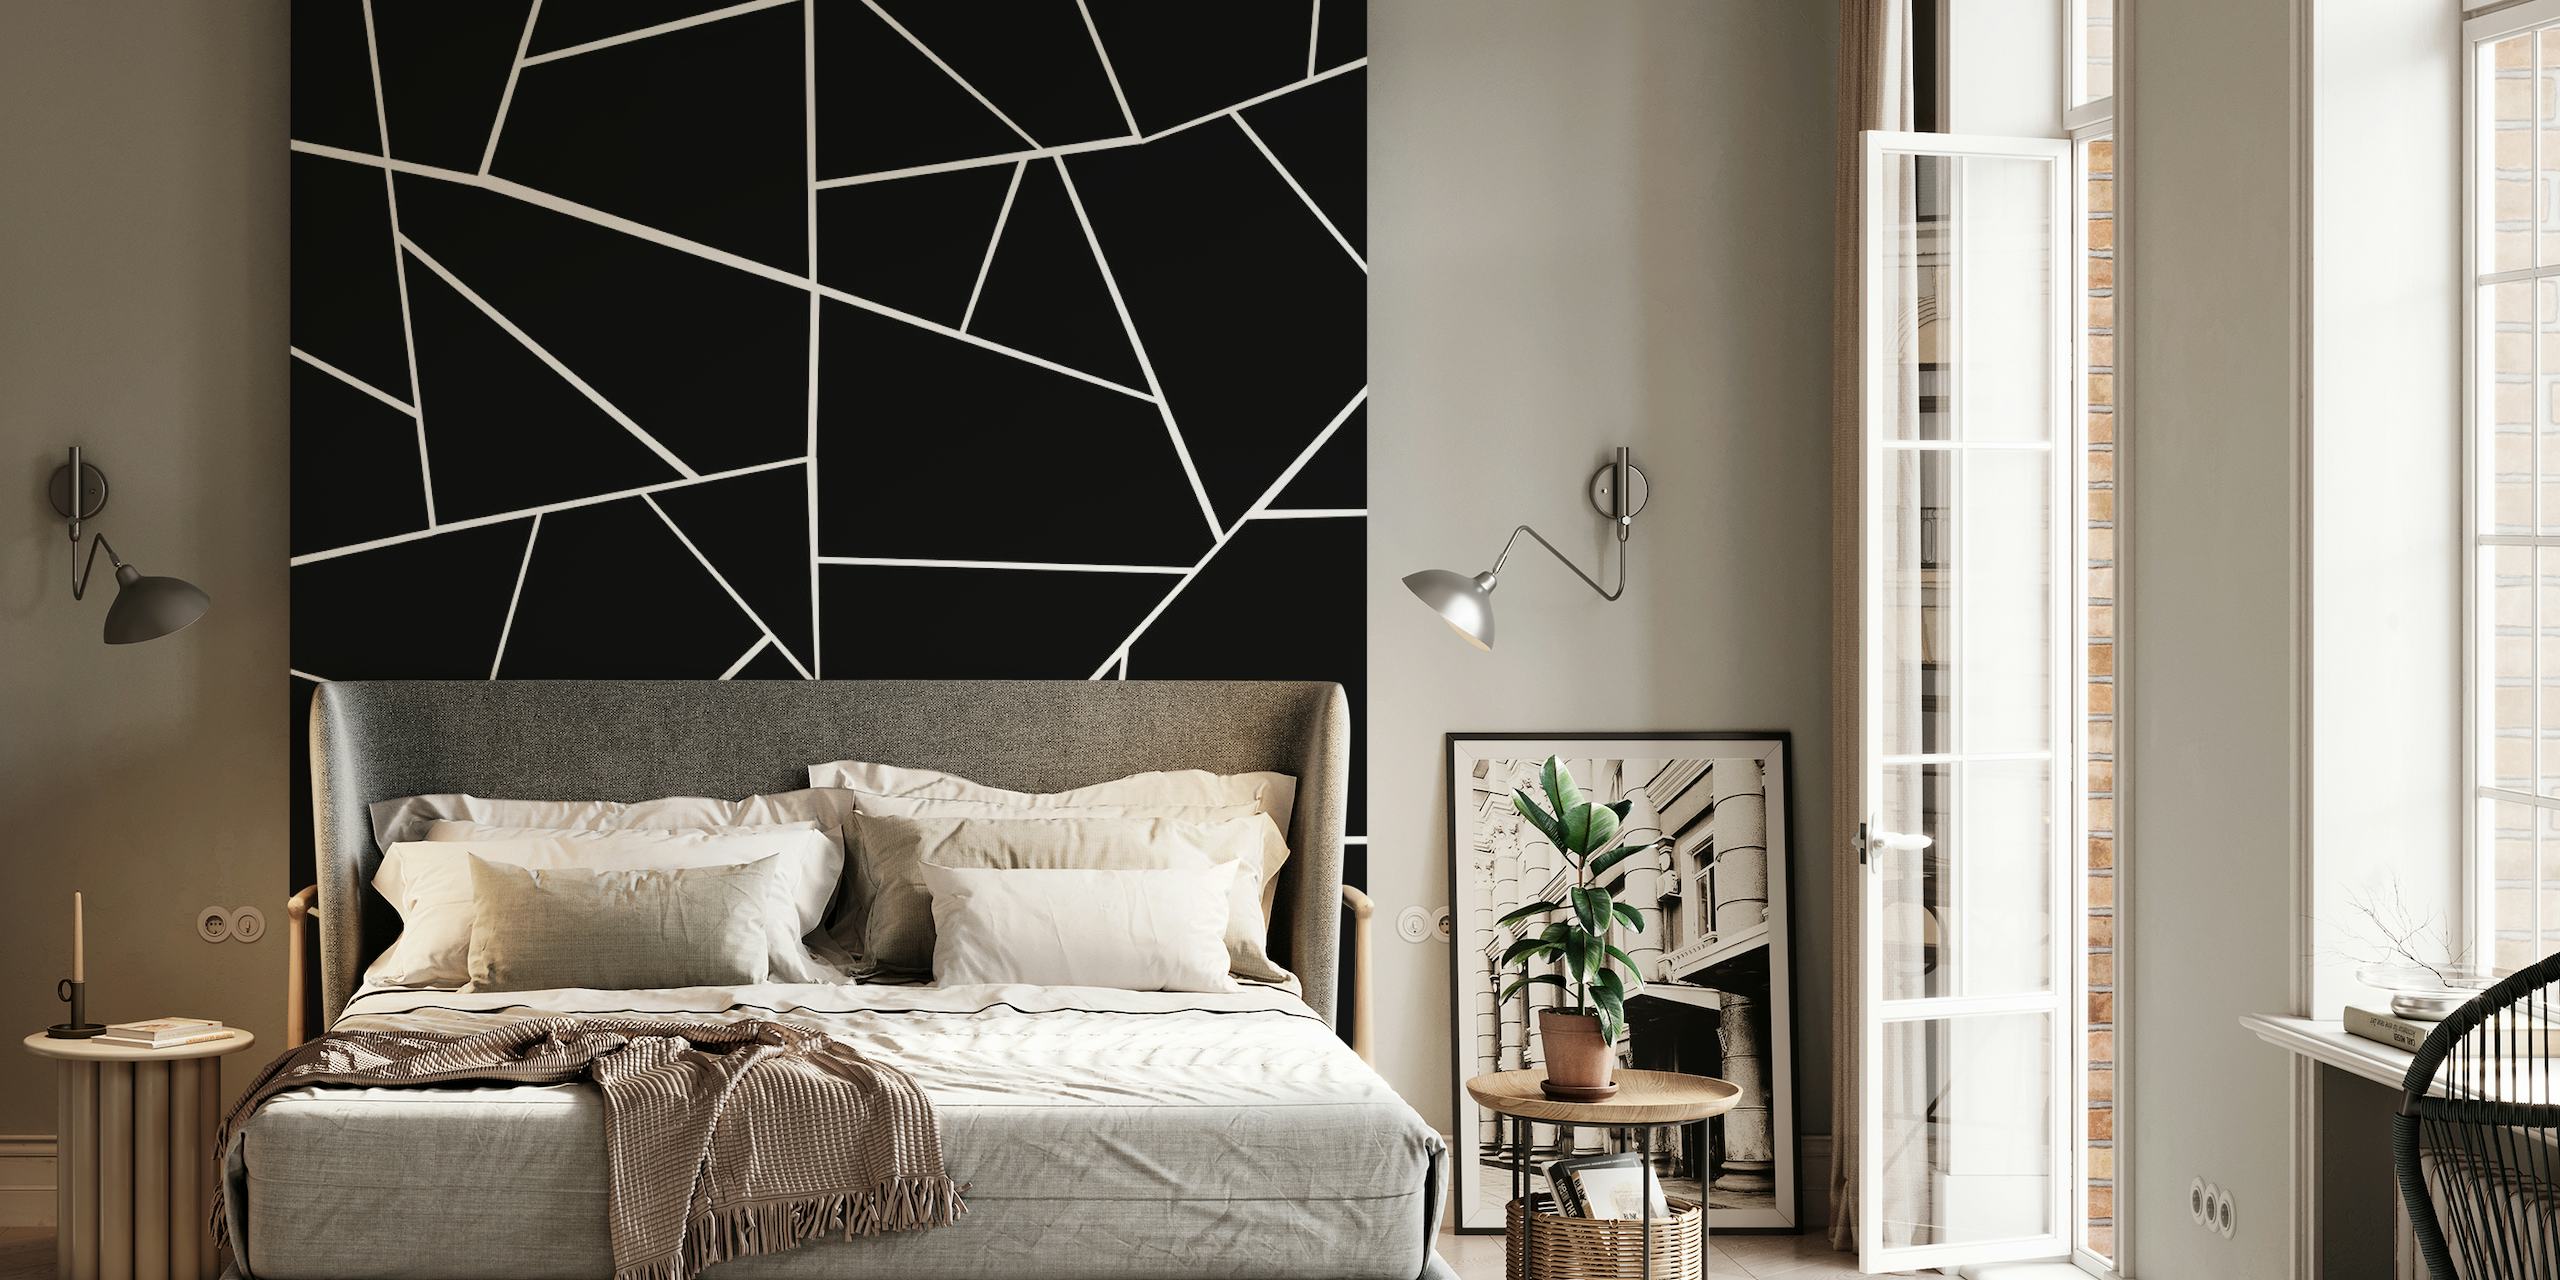 Fotomural vinílico de parede com padrão geométrico preto e branco com linhas e ângulos nítidos criando um visual moderno.